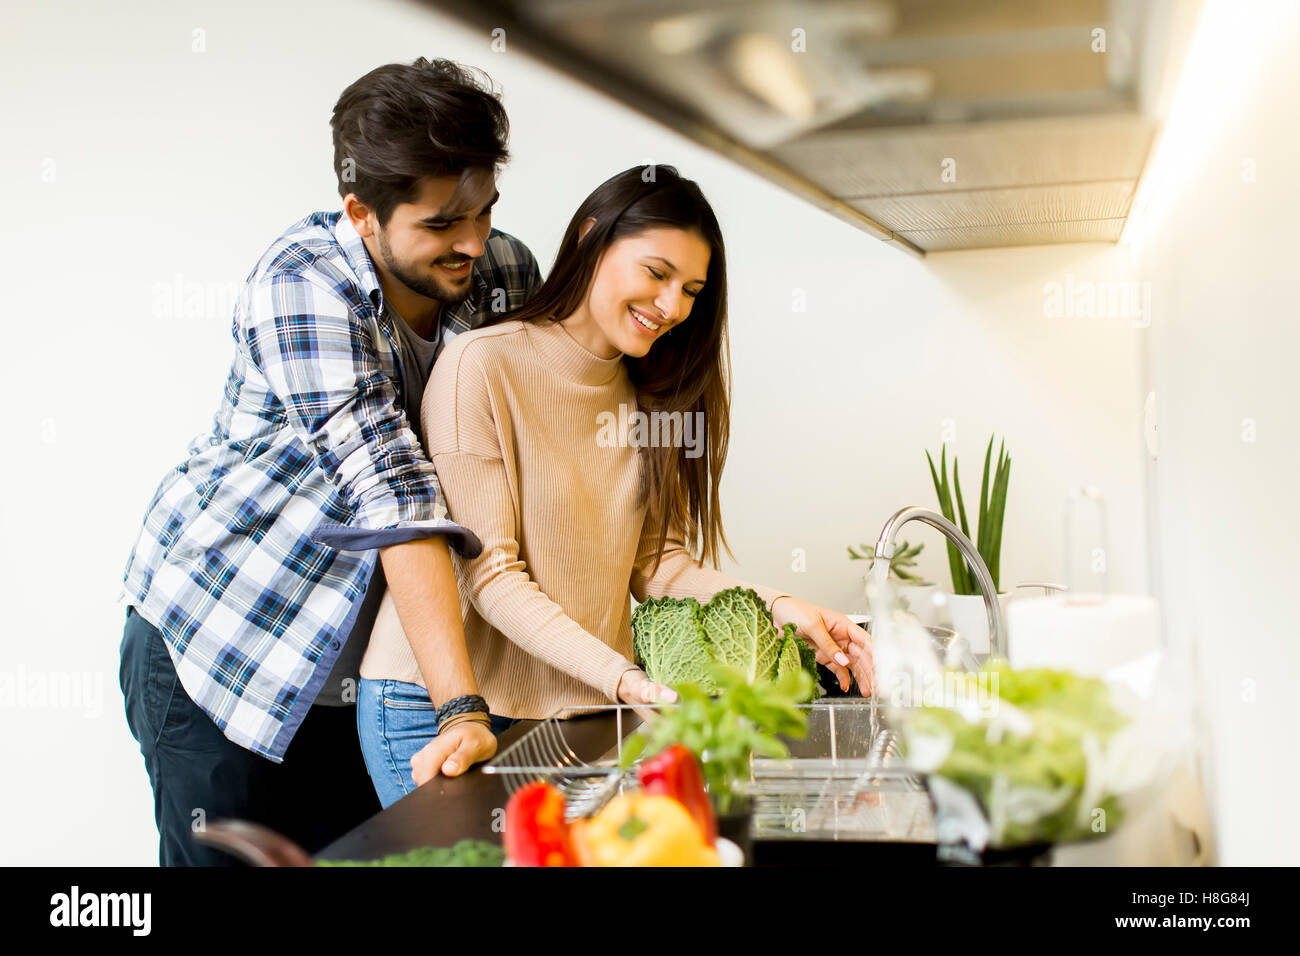 Happy young couple préparer la nourriture dans la cuisine Banque D'Images